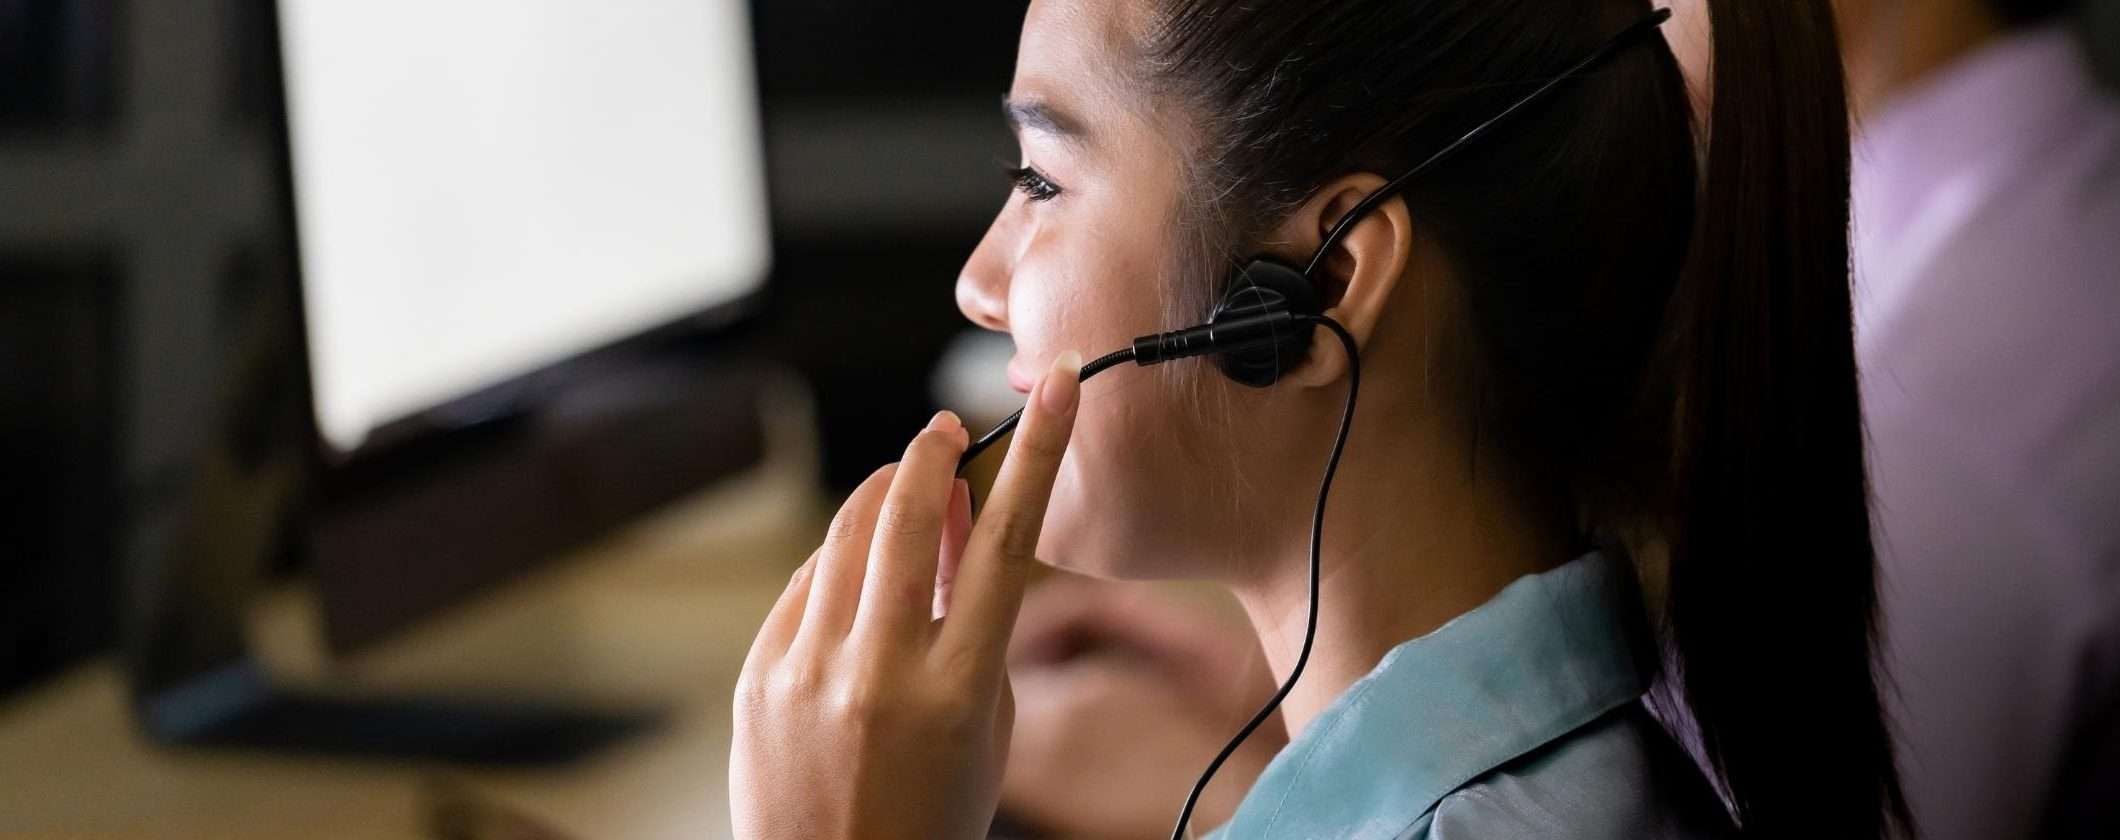 5 consigli contro il telemarketing selvaggio dei Call Center